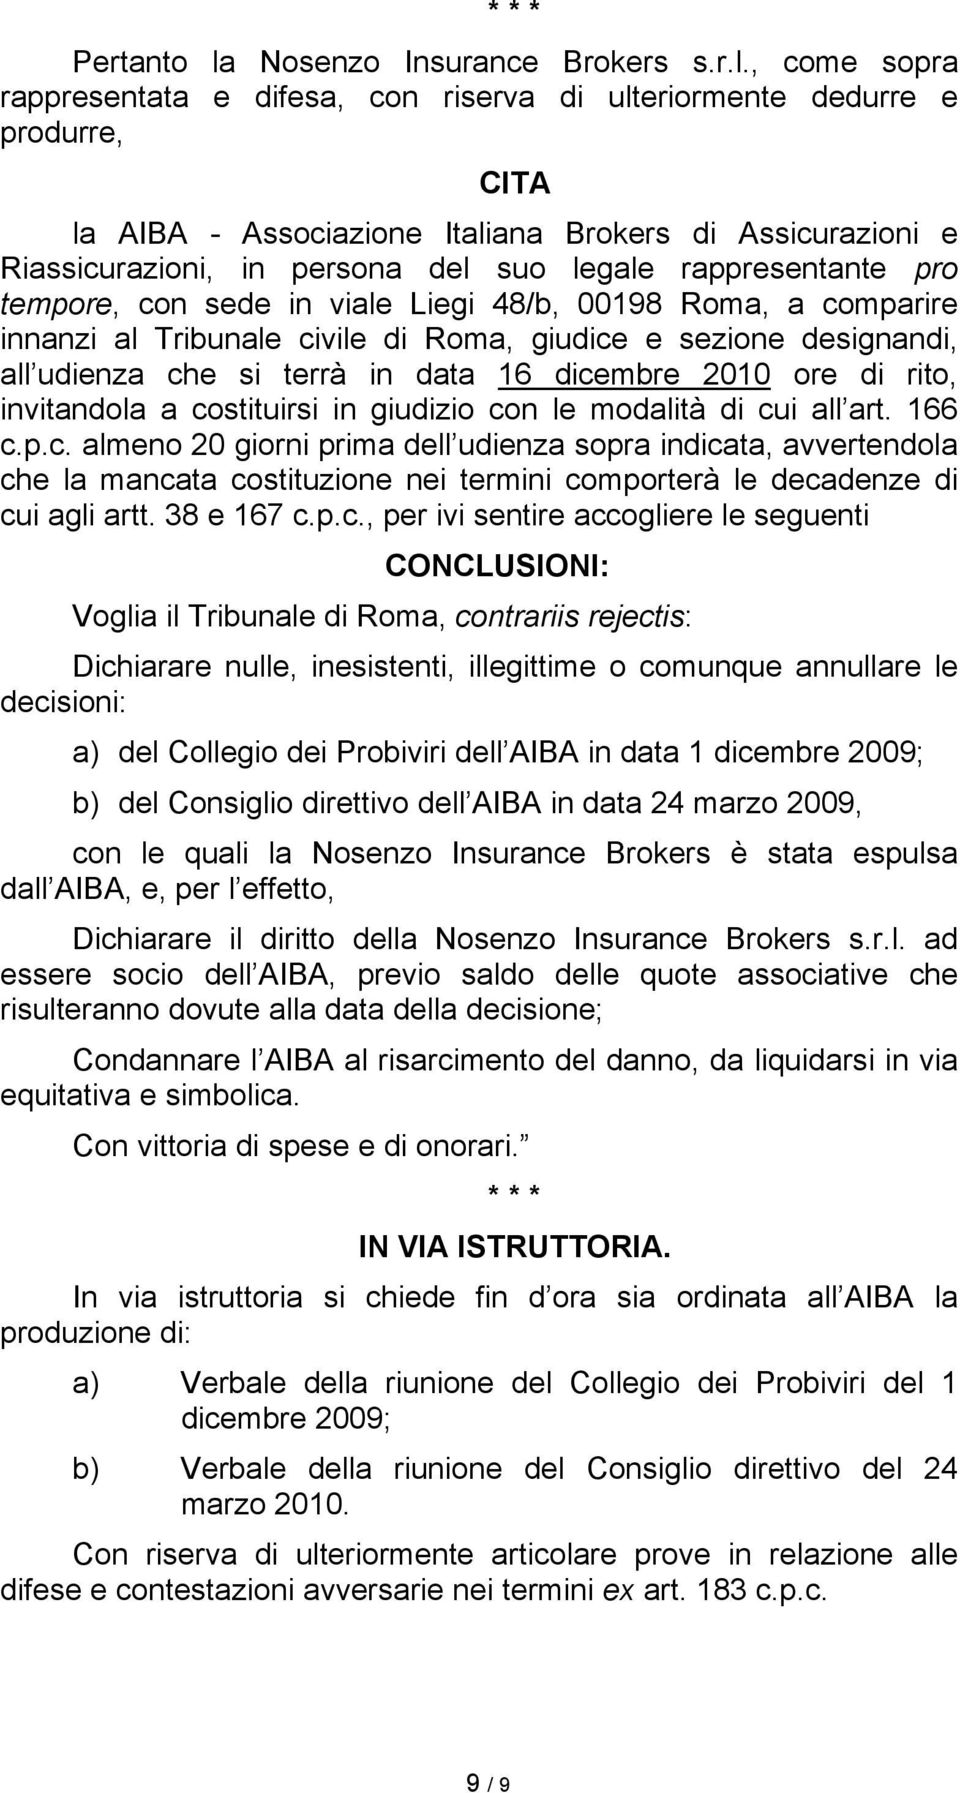 , come sopra rappresentata e difesa, con riserva di ulteriormente dedurre e produrre, CITA la AIBA - Associazione Italiana Brokers di Assicurazioni e Riassicurazioni, in persona del suo legale